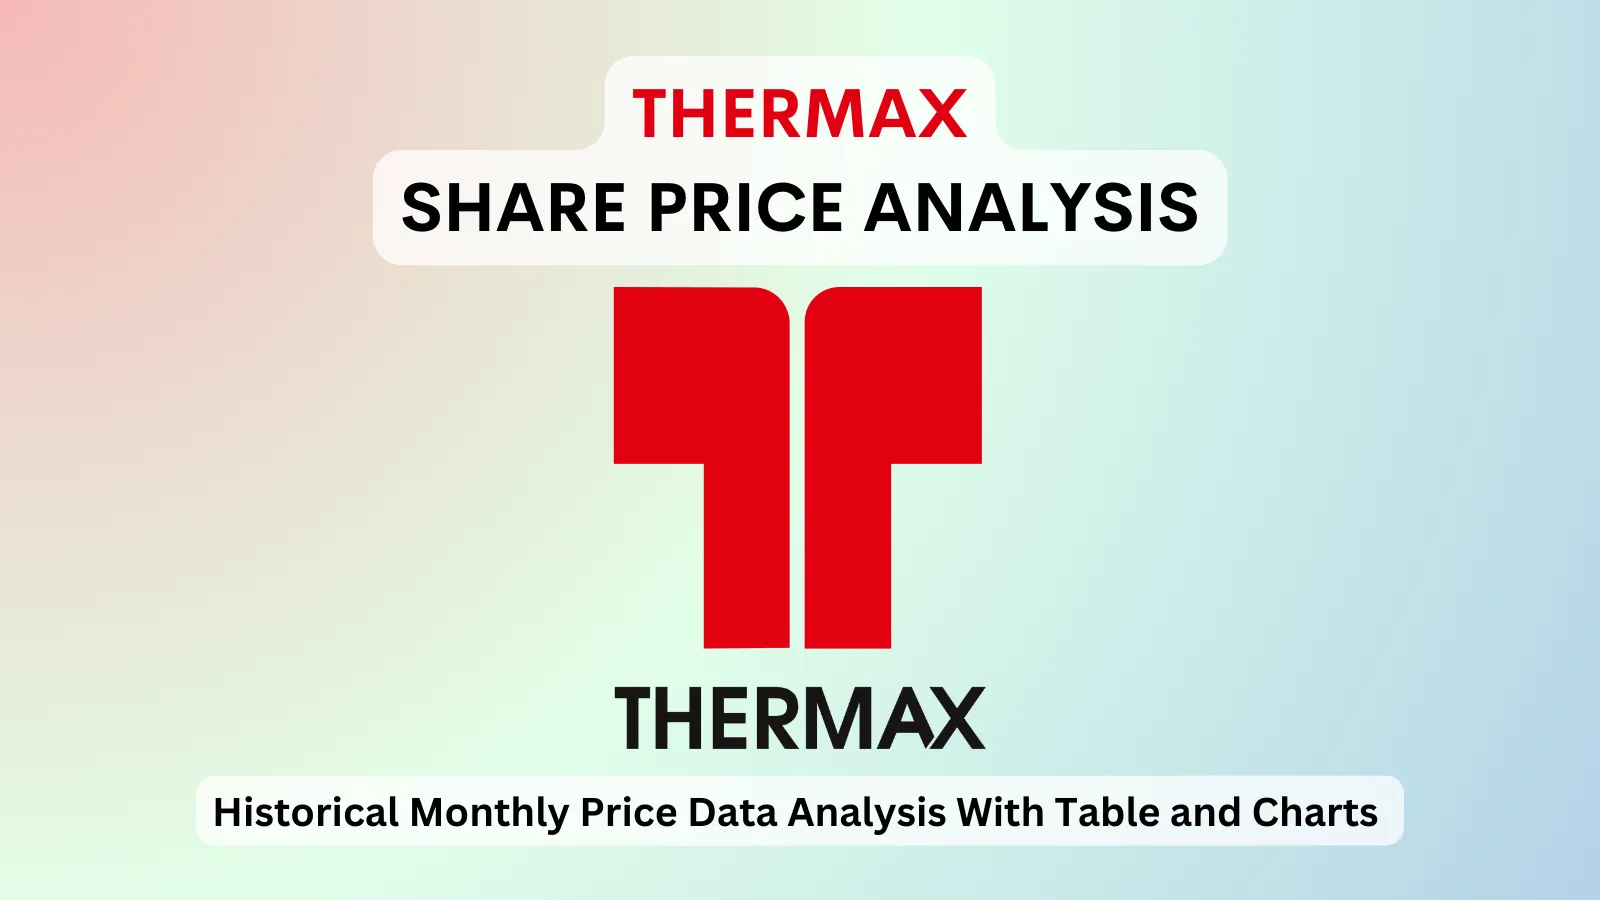 Thermax share price analysis